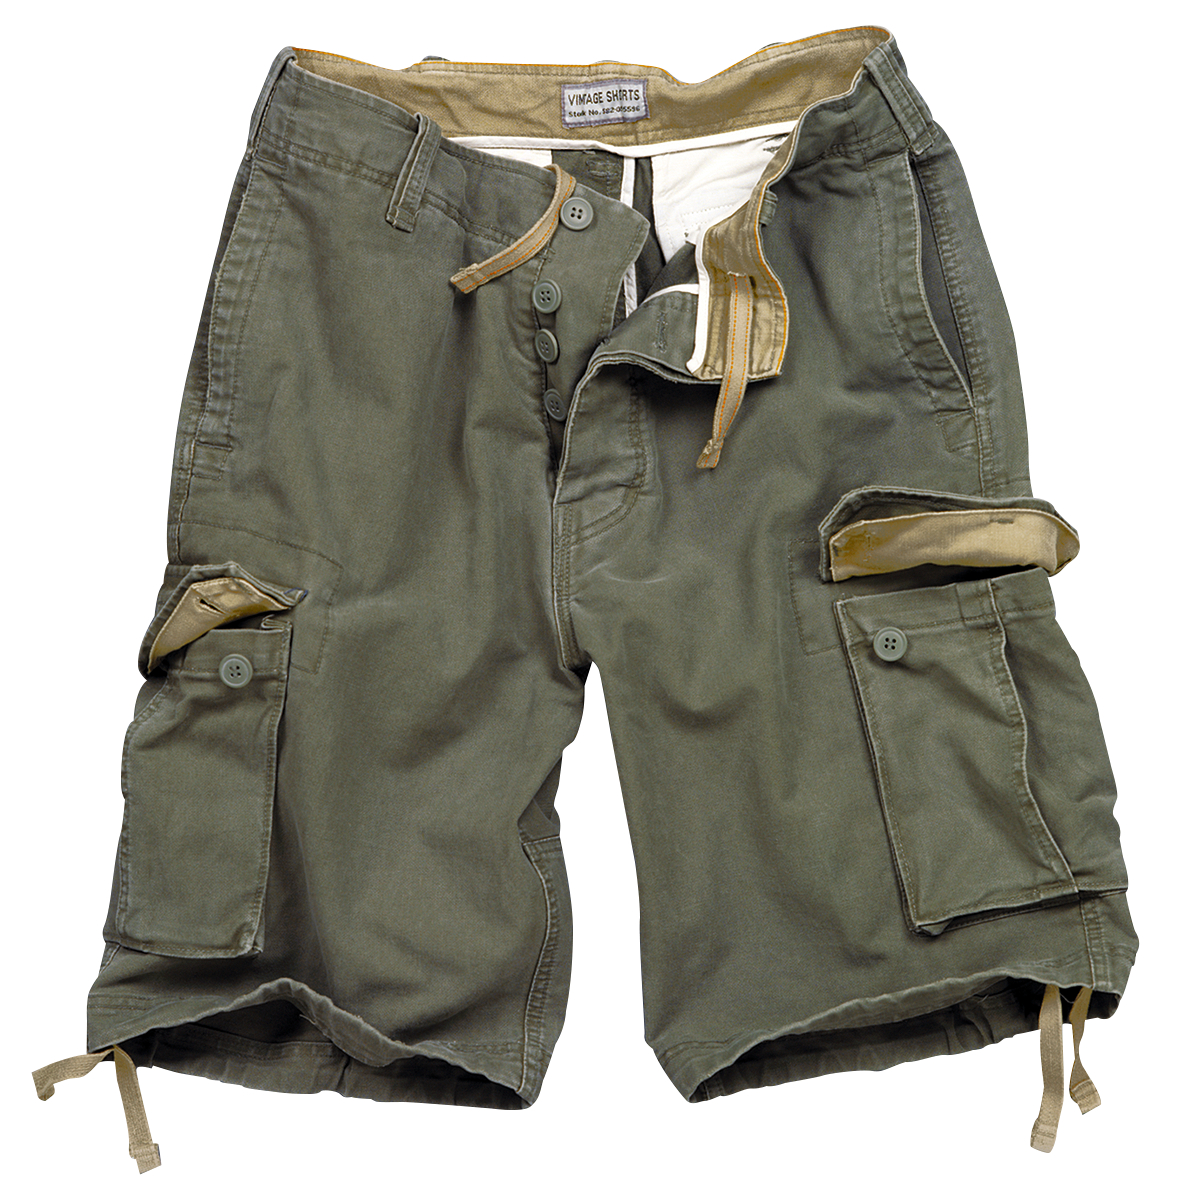 Surplus Men's Vintage Shorts (olive) Sz. L 